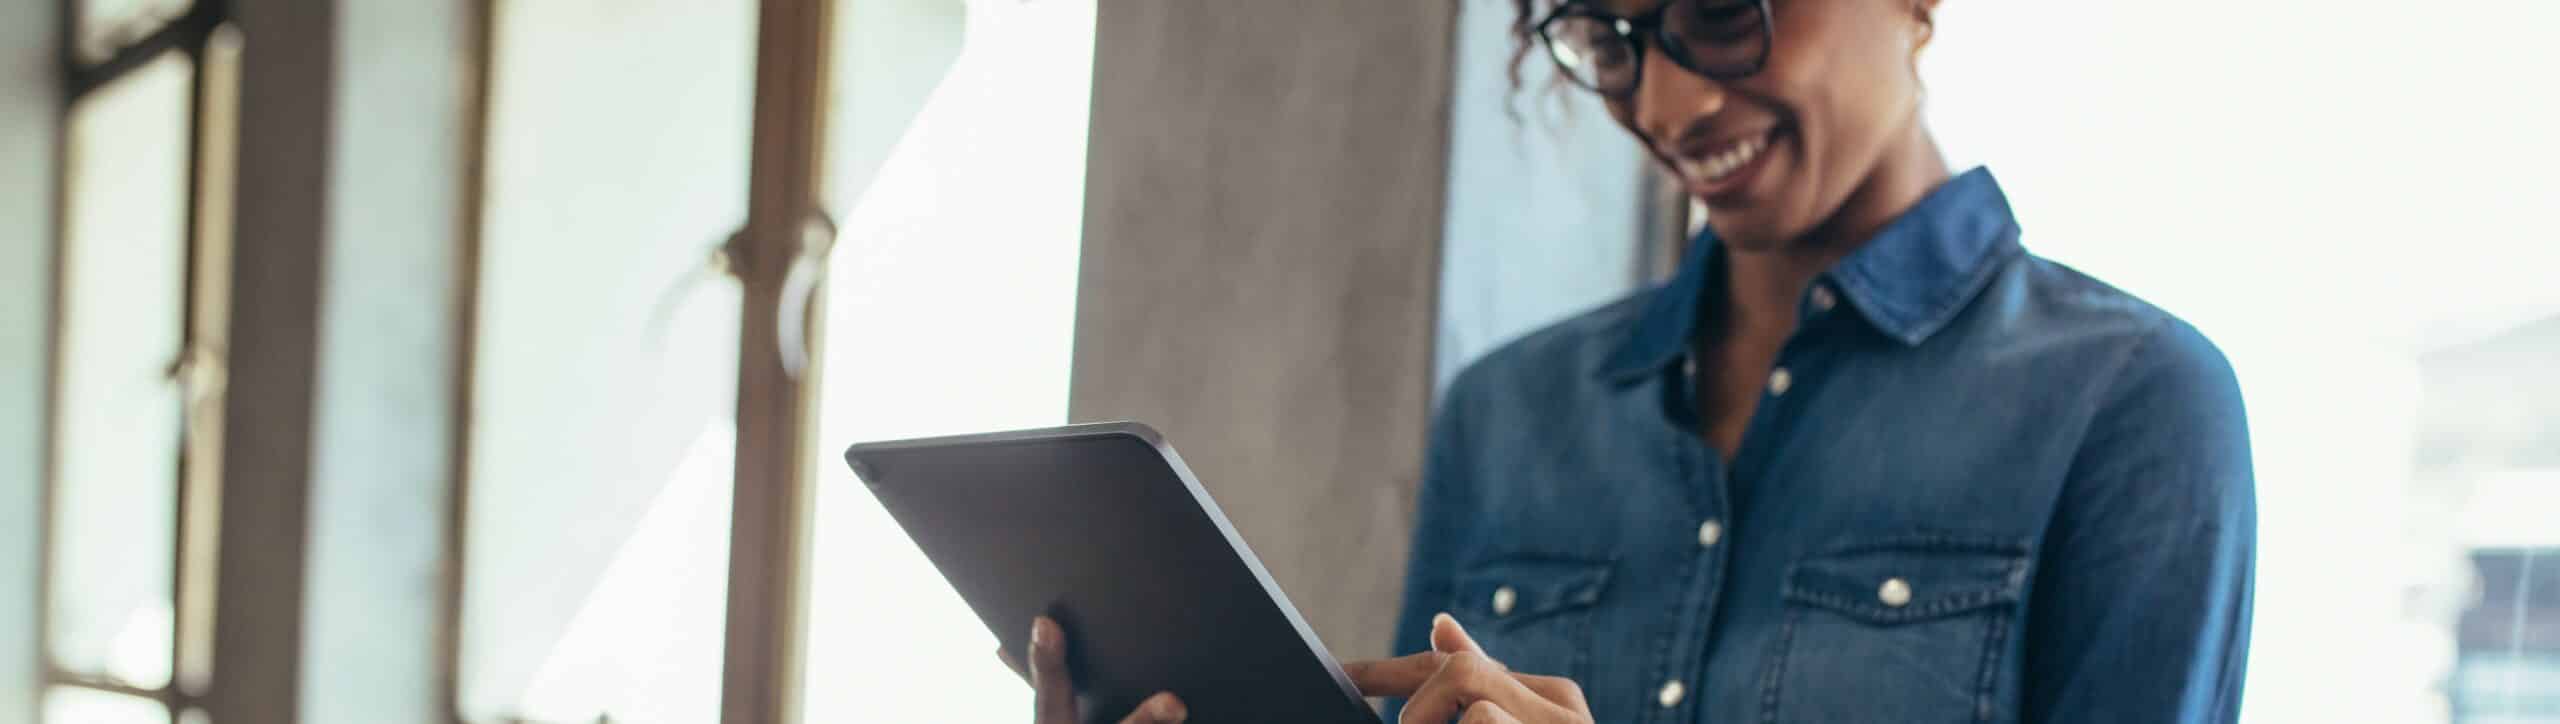 Female entrepreneur in office using digital tablet